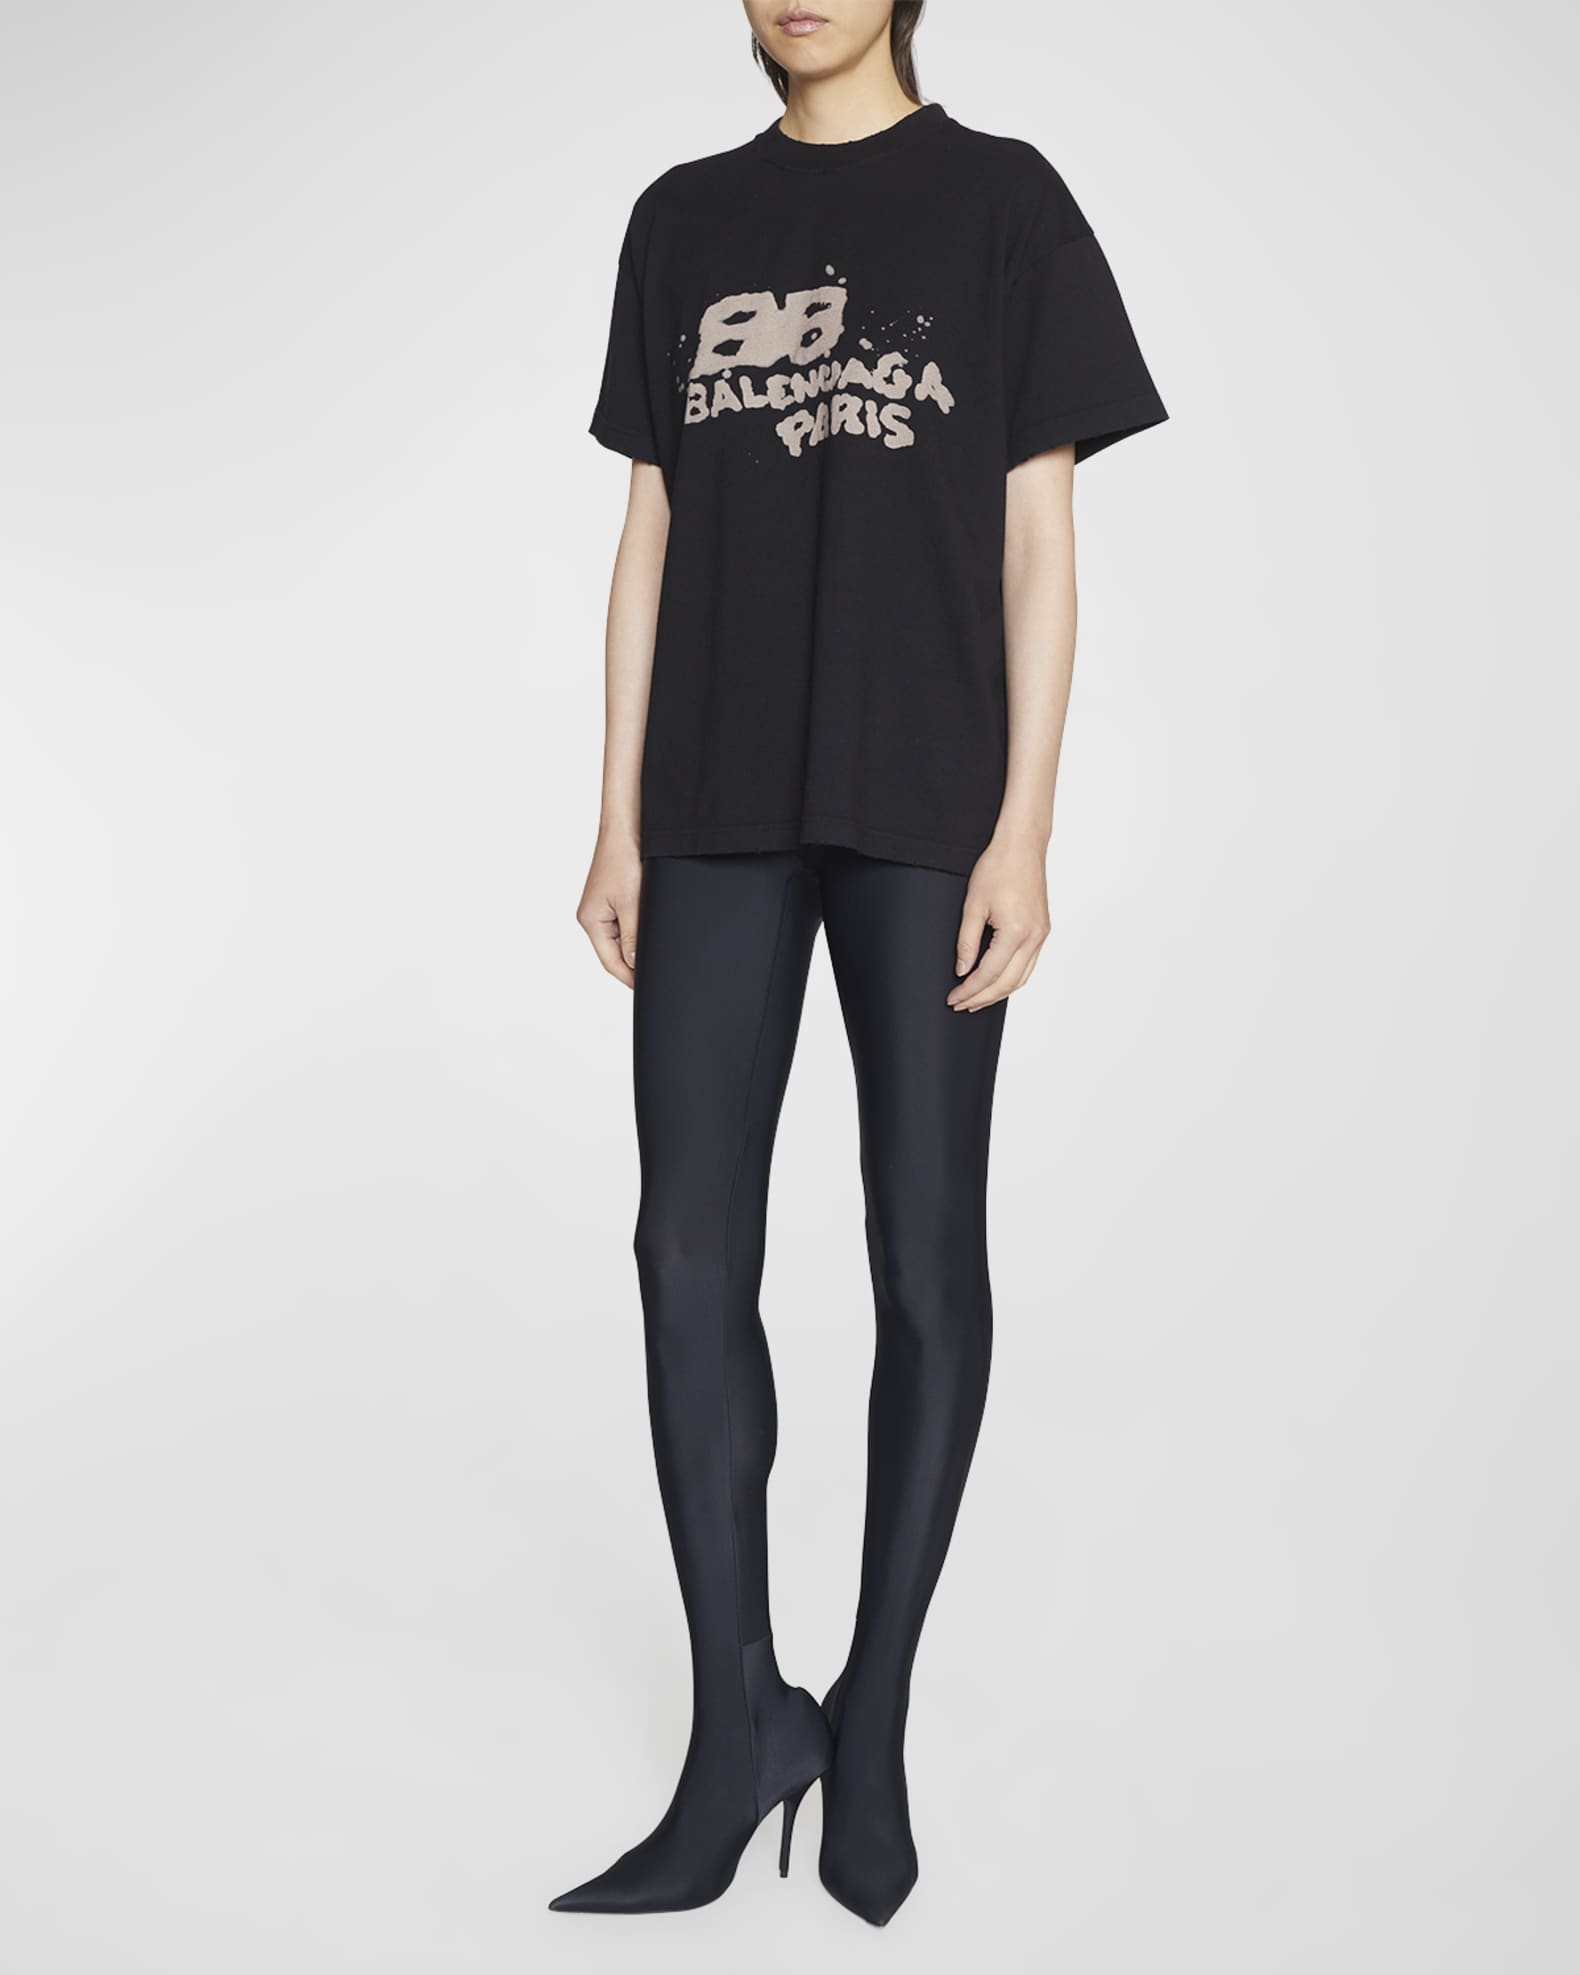 Balenciaga Balenciaga LOGO MEDIUM FIT T-shirt - Stylemyle